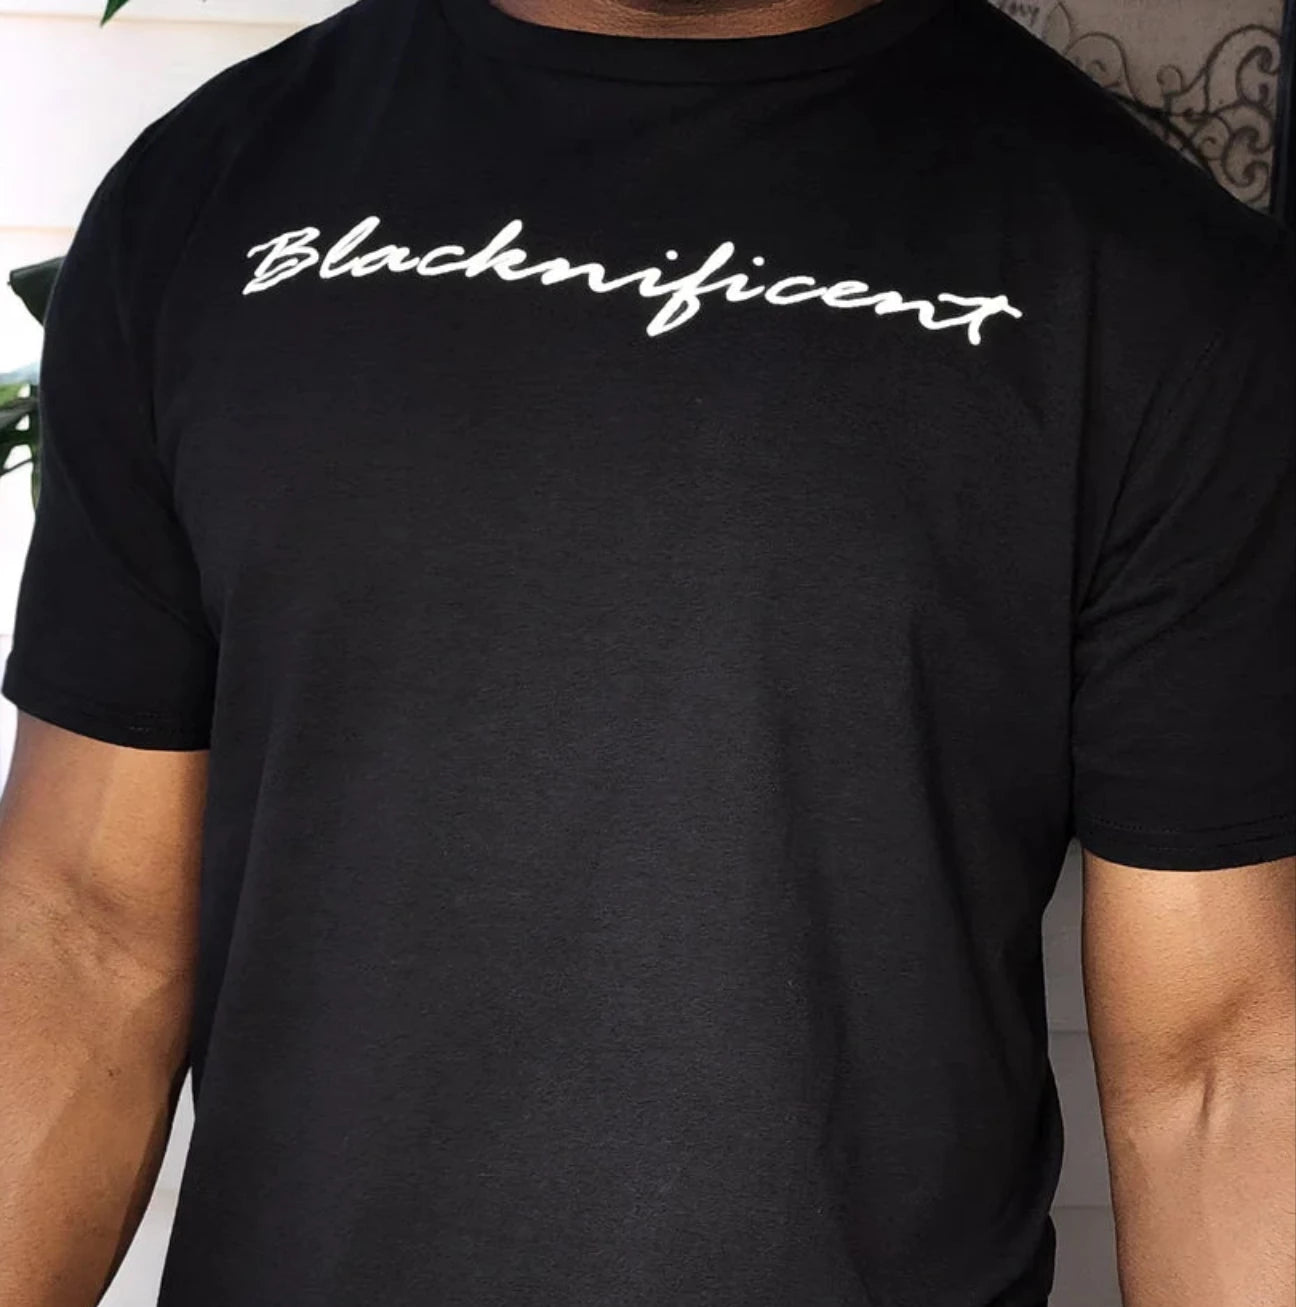 "URise Together" Blacknificent T-shirt - Black - URiseTogetherApparel